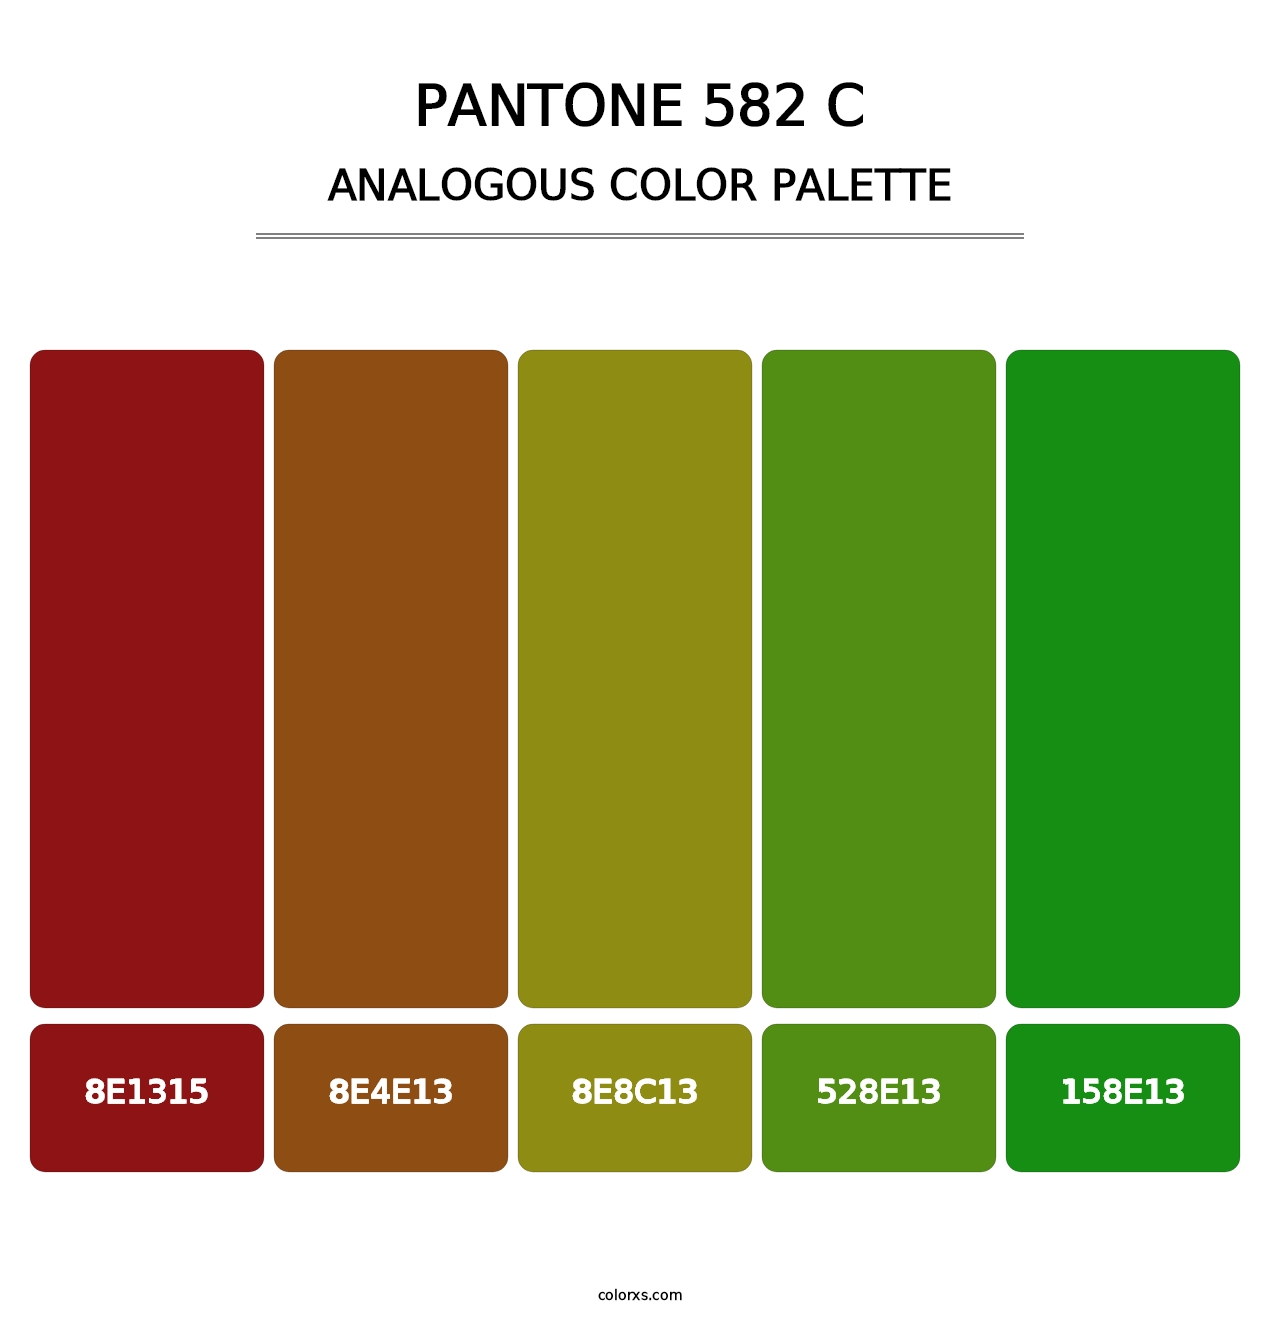 PANTONE 582 C - Analogous Color Palette